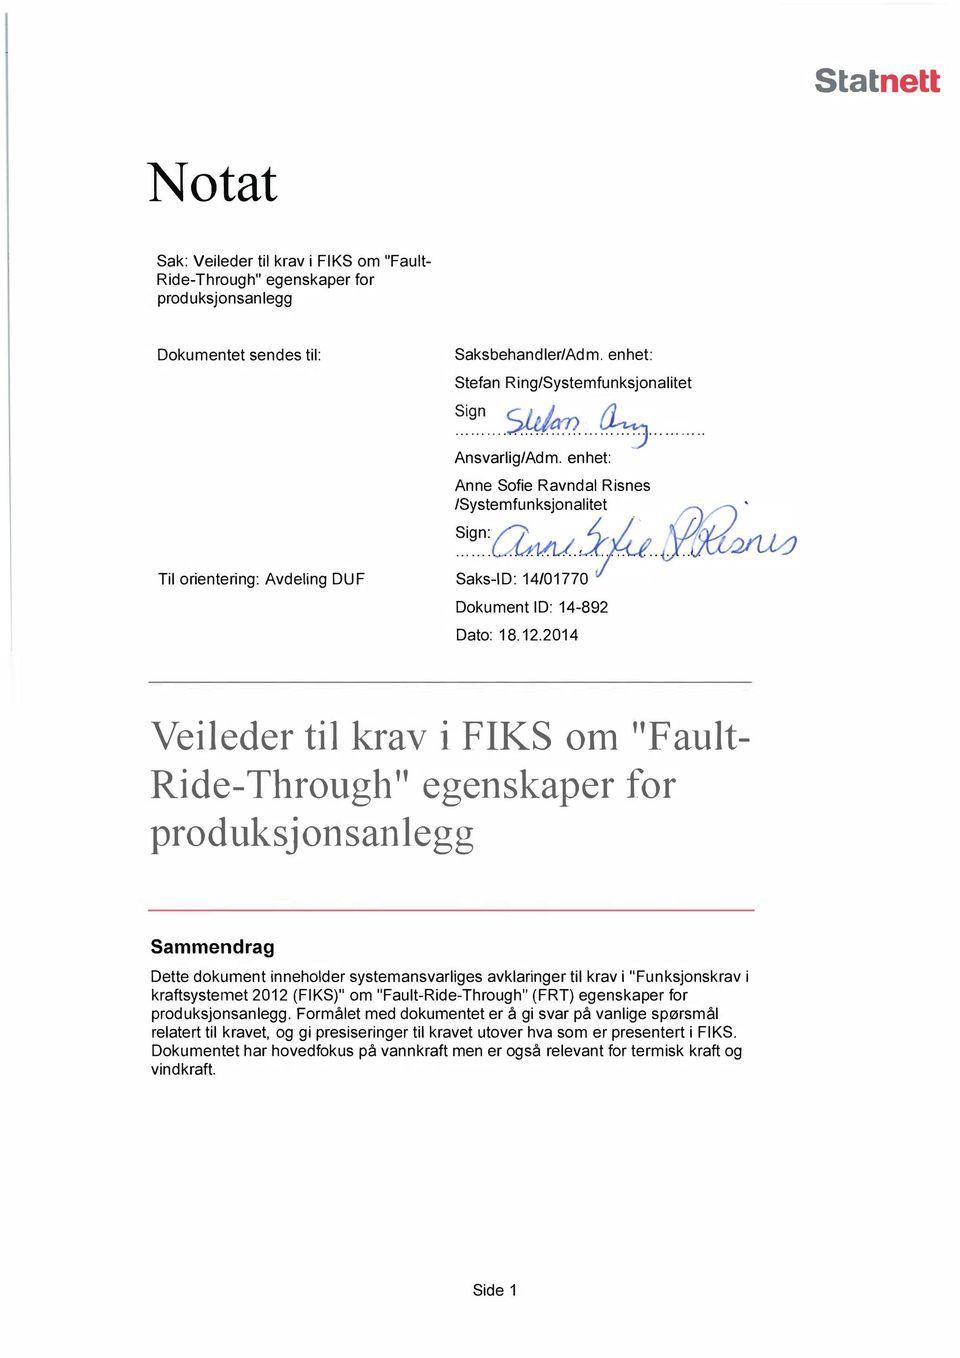 2014 Veileder til krav i FIKS om "Fault Ride-Through" egenskaper for produksjonsanlegg Sammendrag Dette dokument inneholder systemansvarliges avklaringer til krav i "Funksjonskrav i kraftsystemet